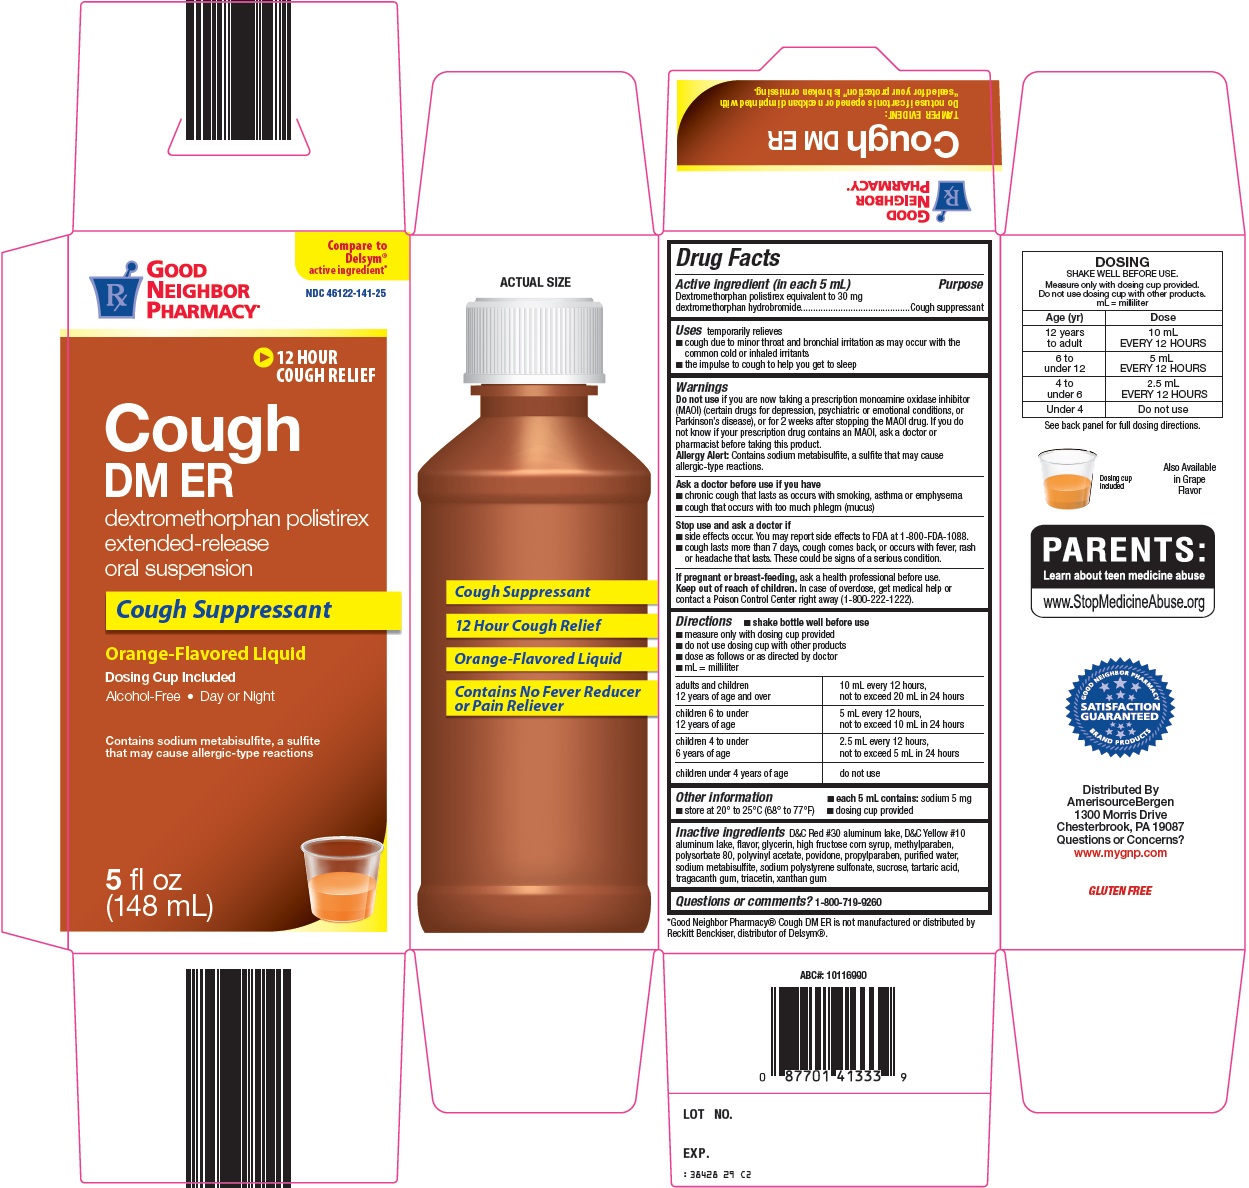 Good Neighbor Pharmacy Cough DM ER image